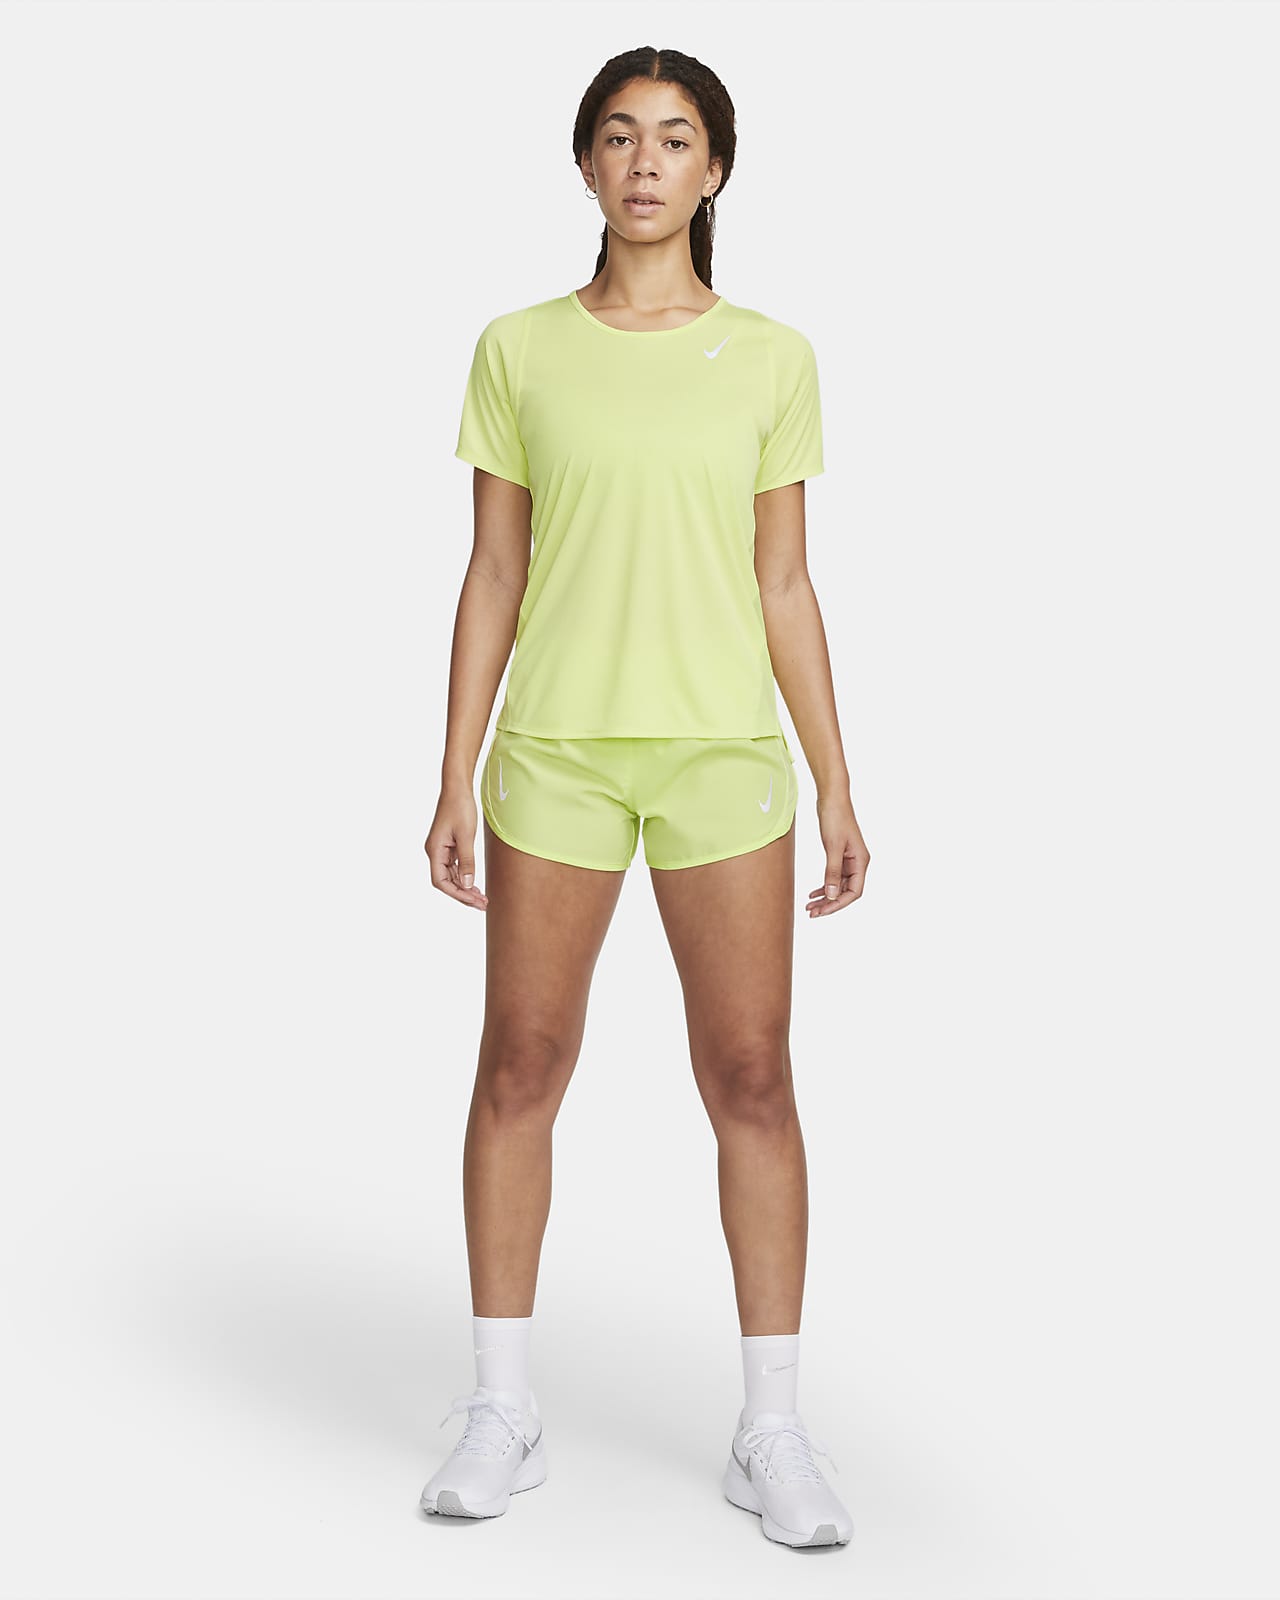 Le meilleur short de running Nike pour femme. Nike LU